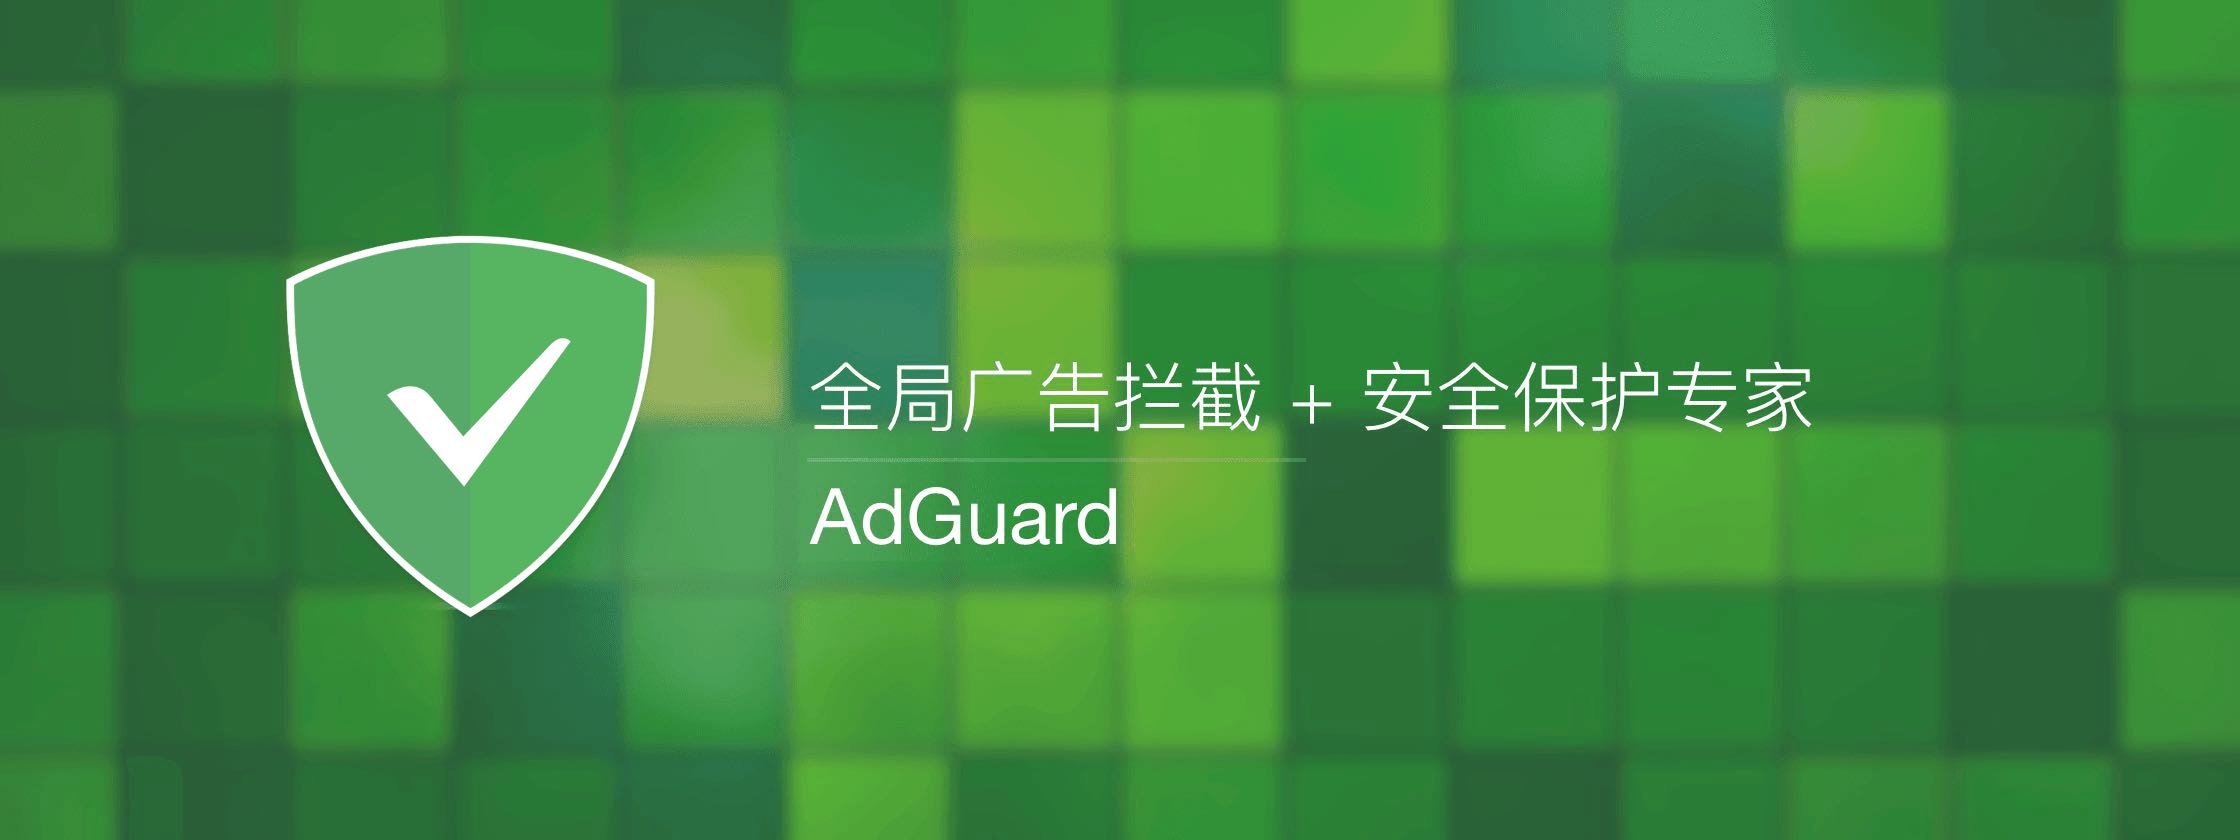 【正版特惠】AdGuard 广告拦截隐私保护 价格低至 88 永久！